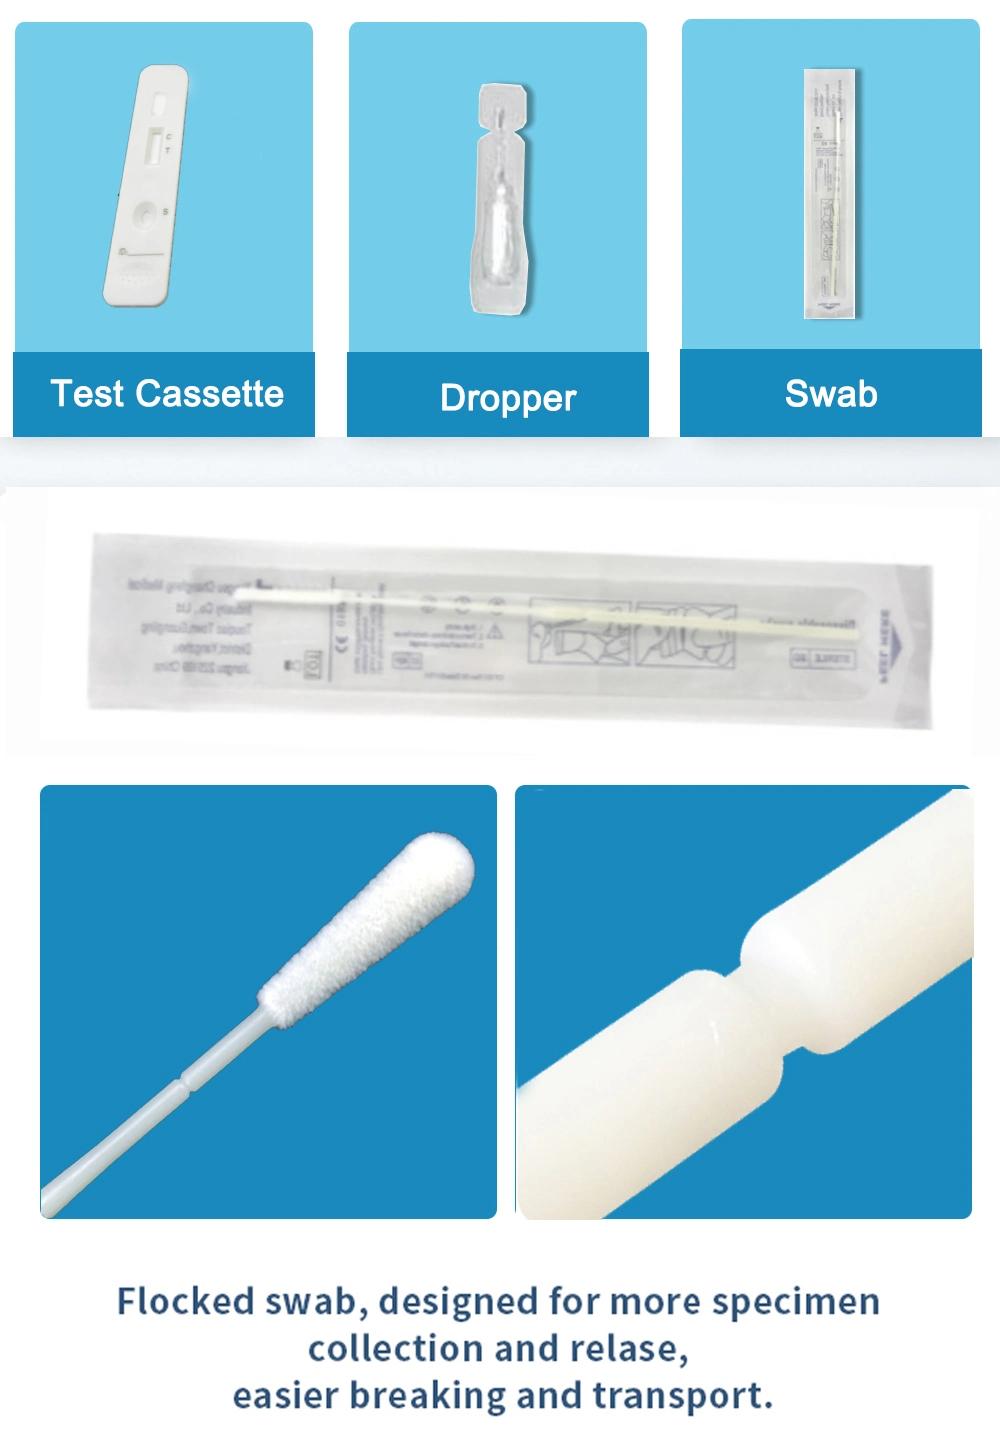 CE Sejoy Home Test Kit Antigen Rapid Test Kits